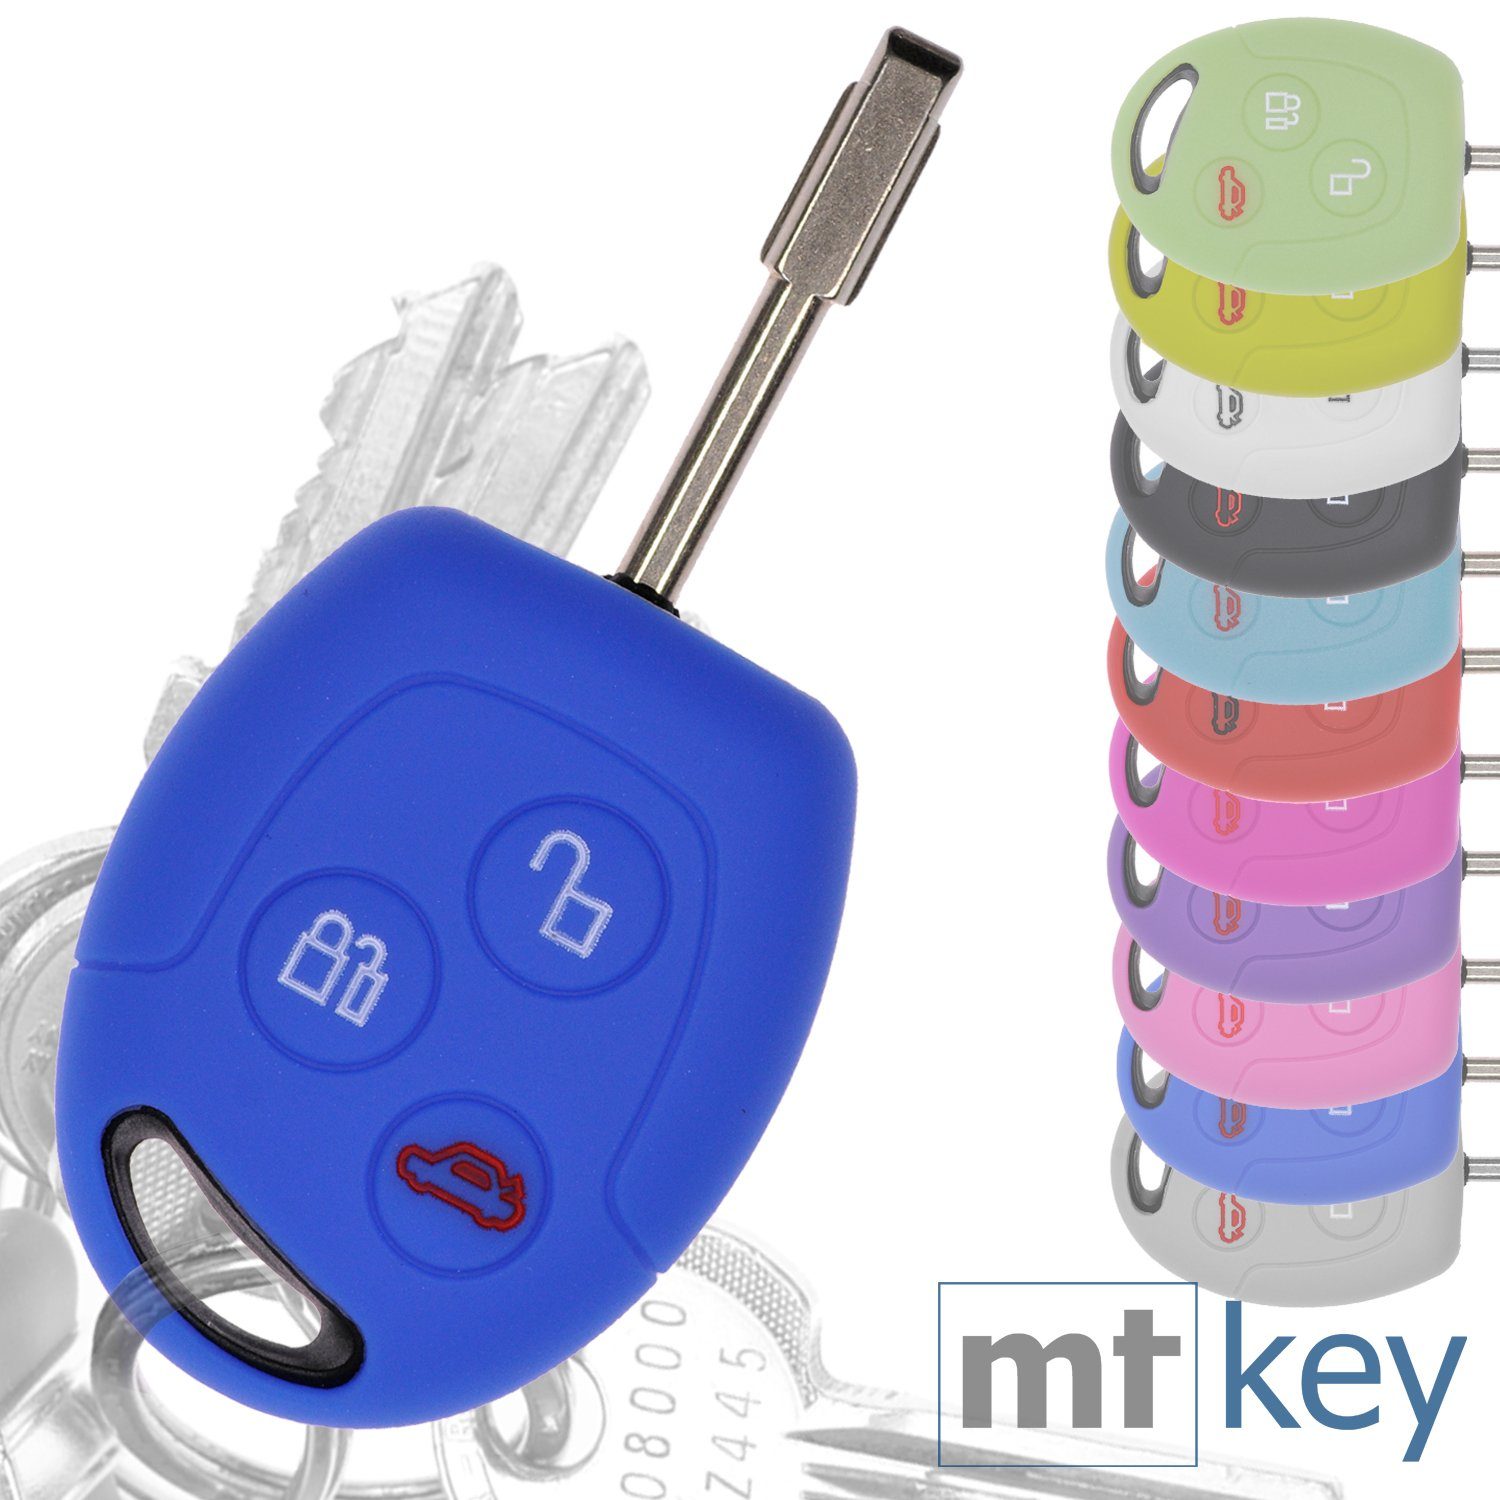 mt-key Schlüsseltasche Autoschlüssel Softcase Silikon Schutzhülle Blau, für Ford Transit Mondeo Focus II Fiesta VI Fusion Galaxy S-MAX 3 Knopf